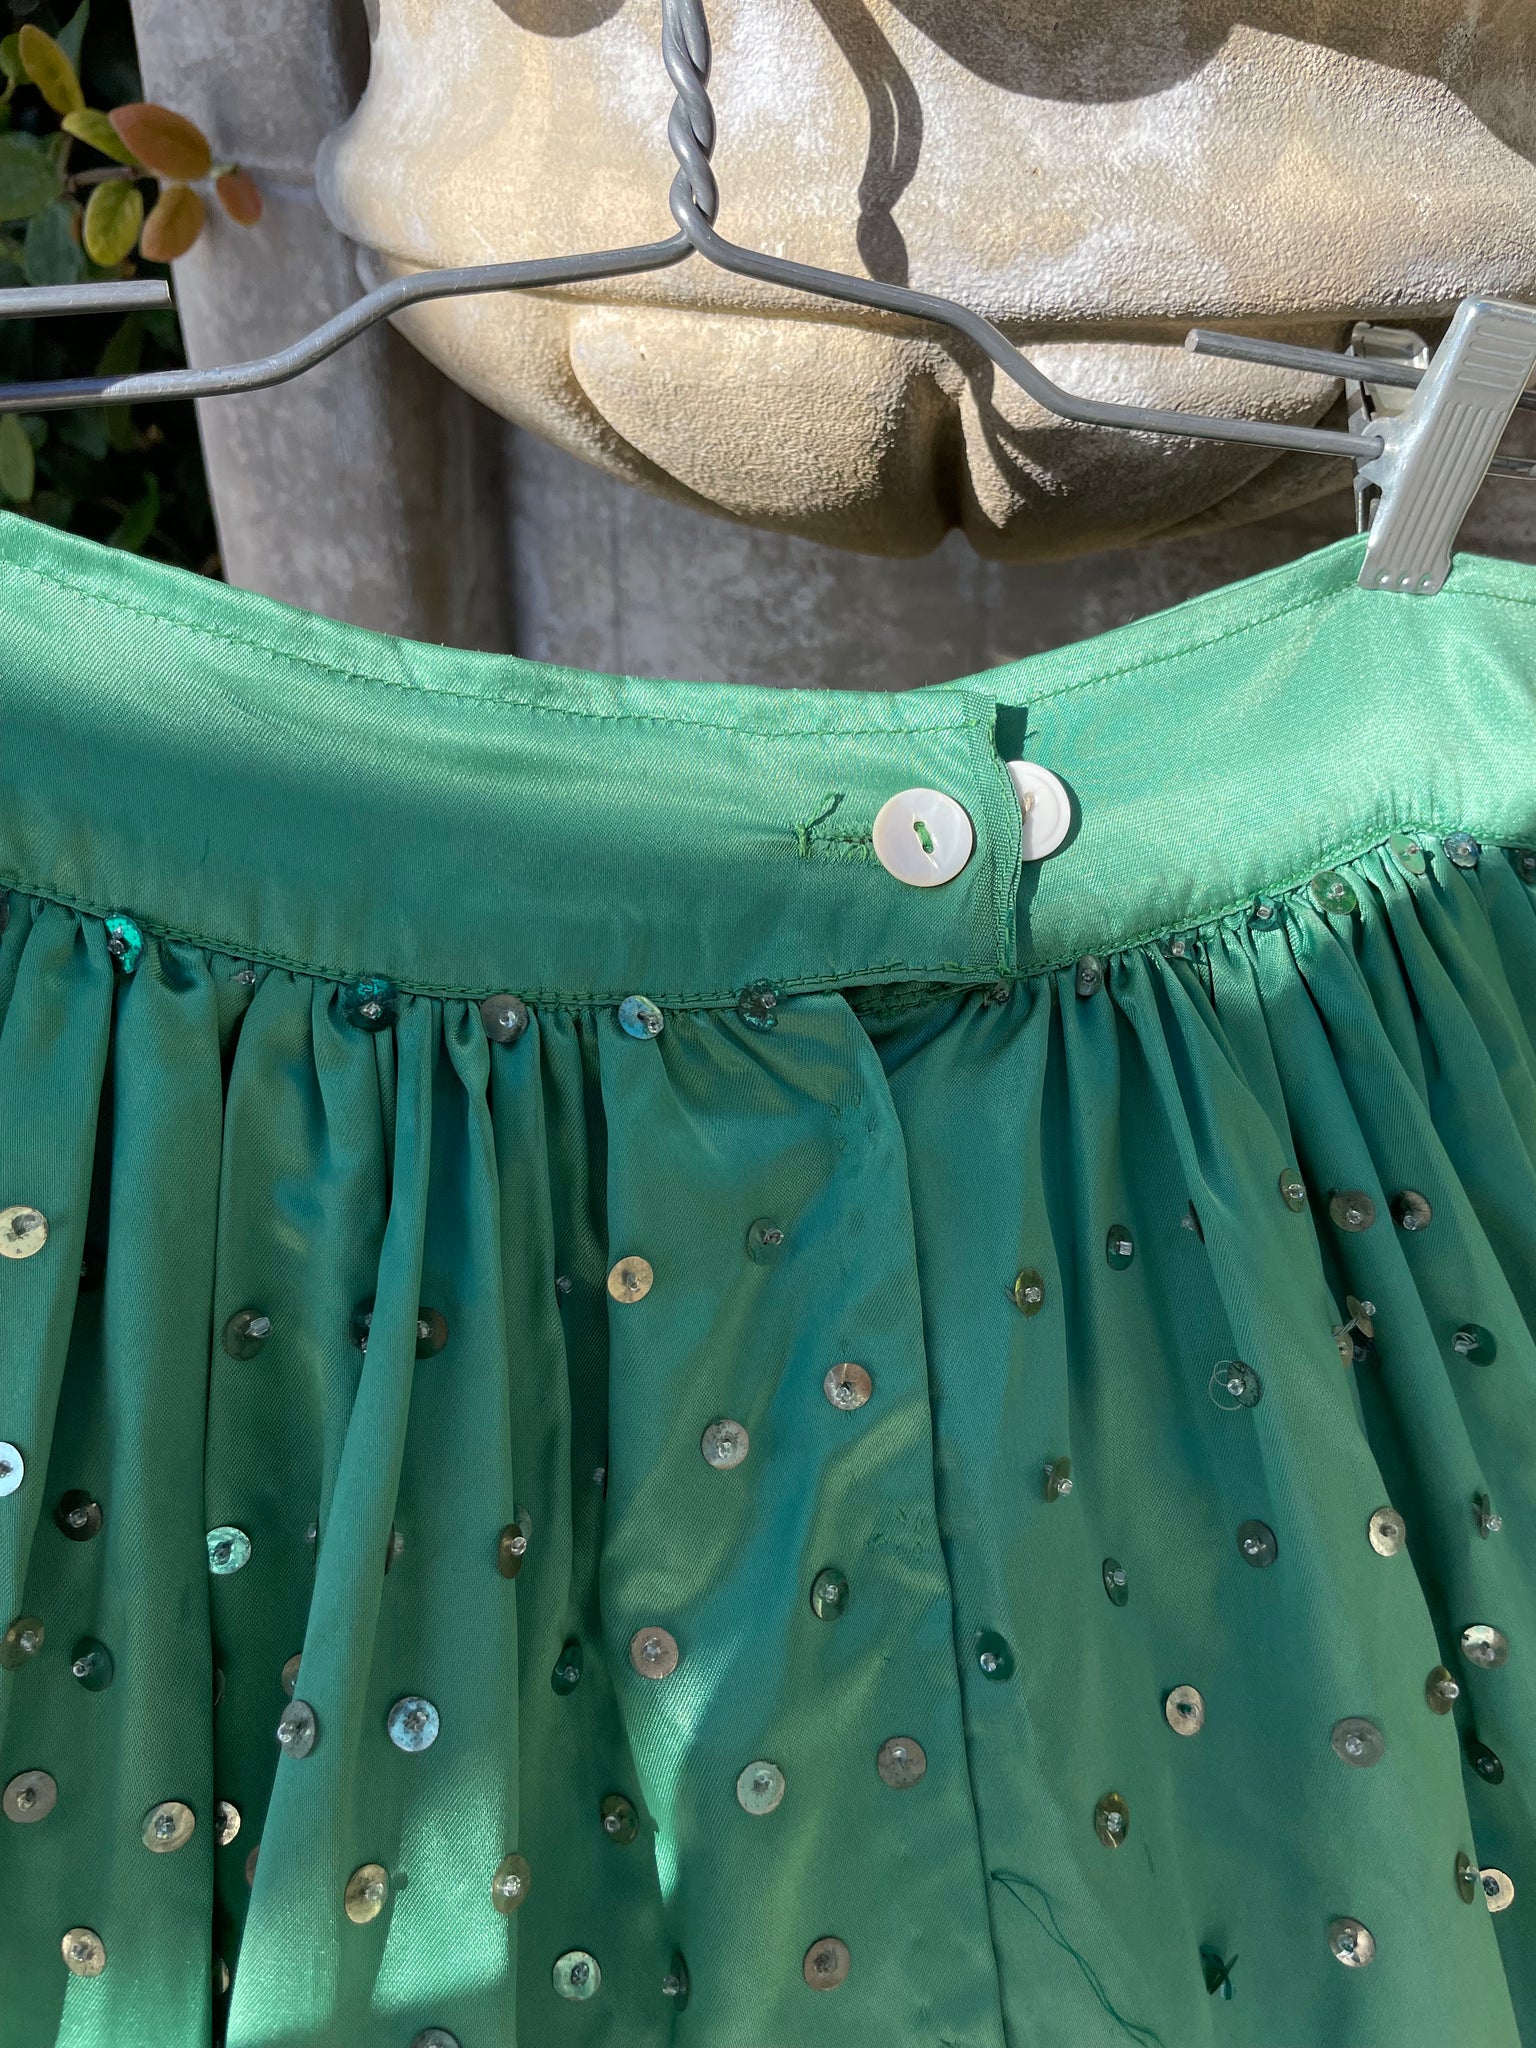 1930s Hand Made Floral Embellished Densely Sequined Skirt